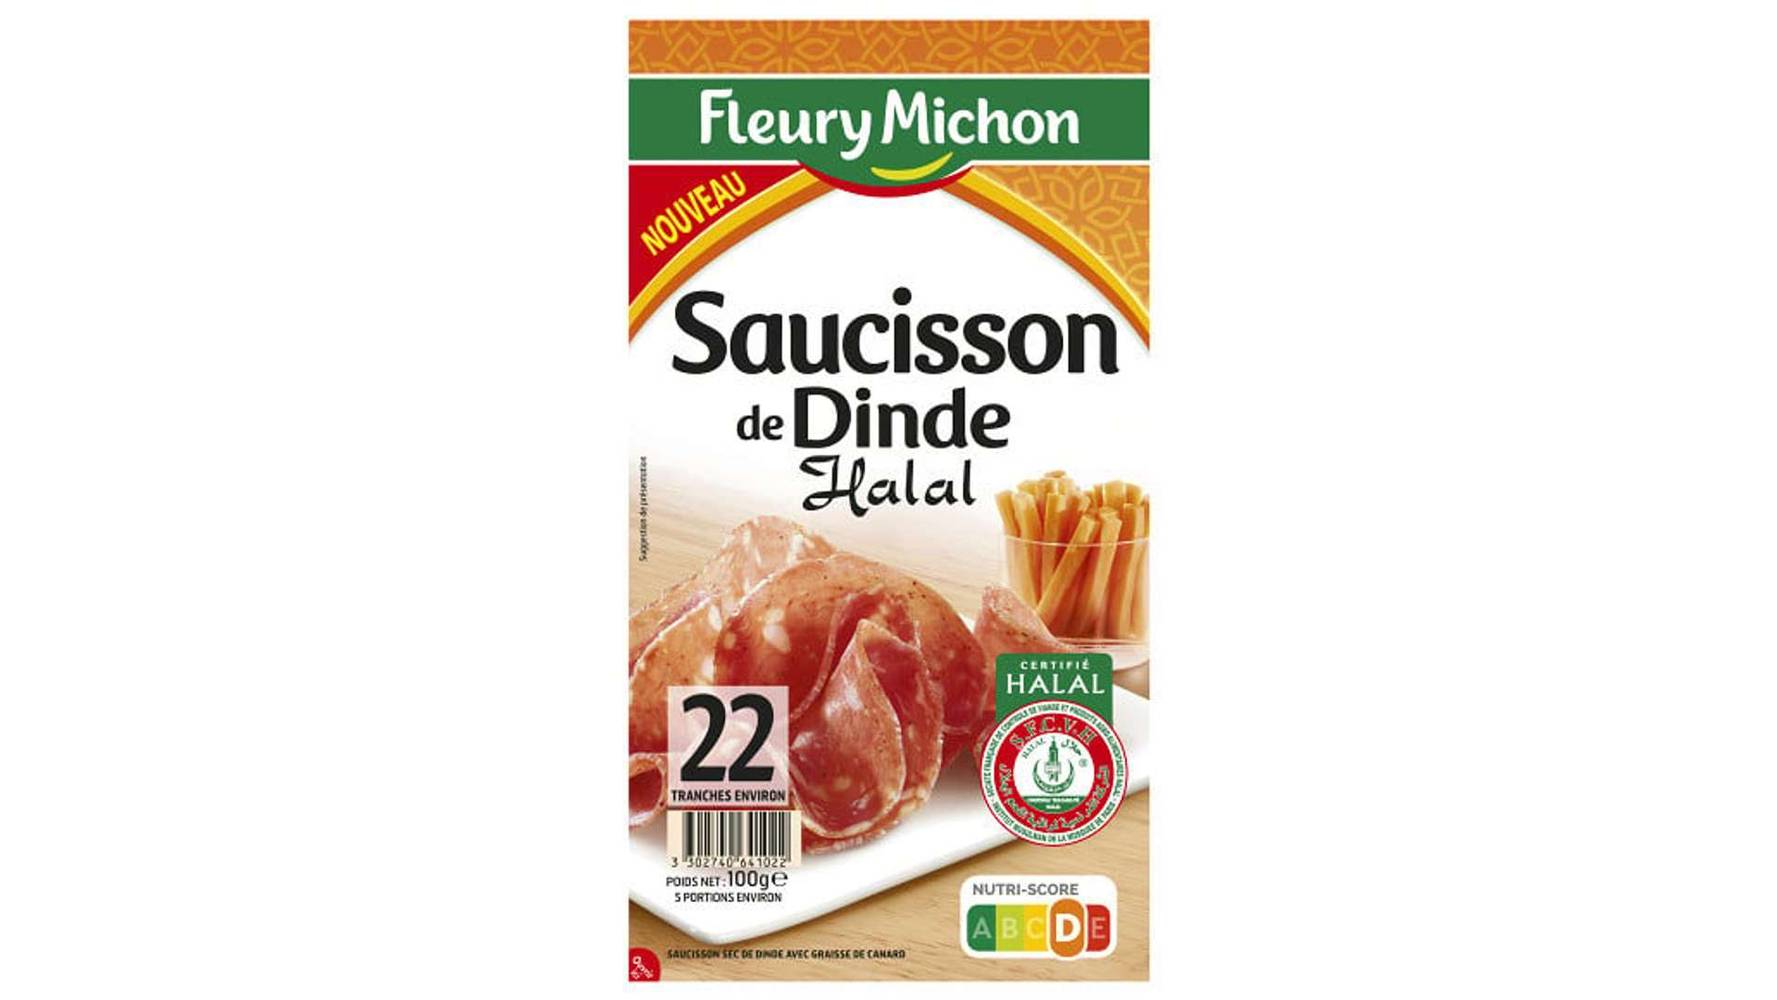 Fleury Michon - Saucisson de dinde